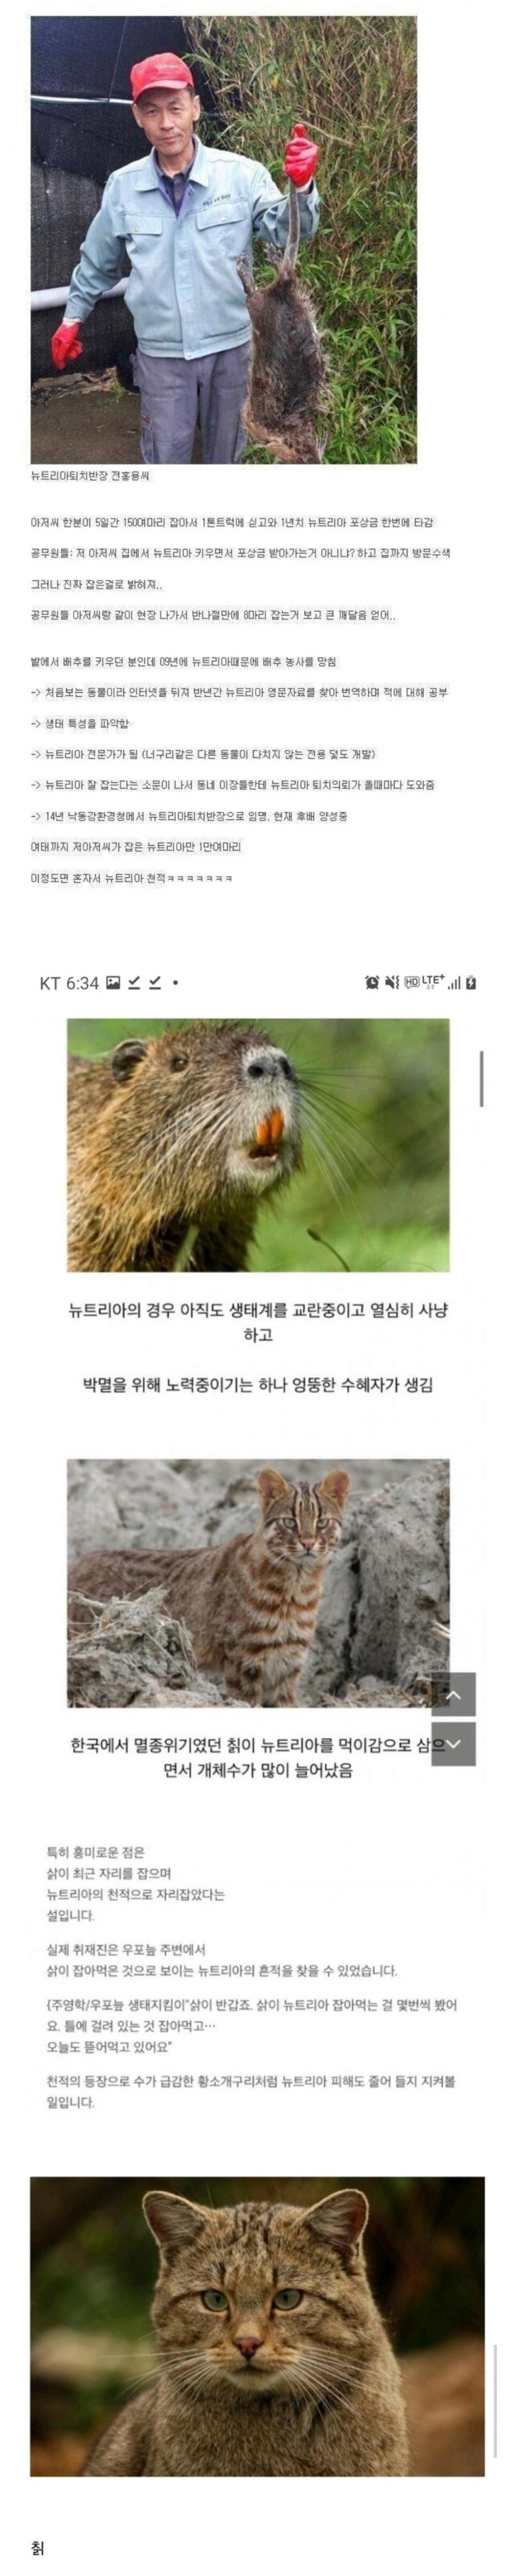 요즘 한국에서 멸종될지도 모르는 생물.jpg